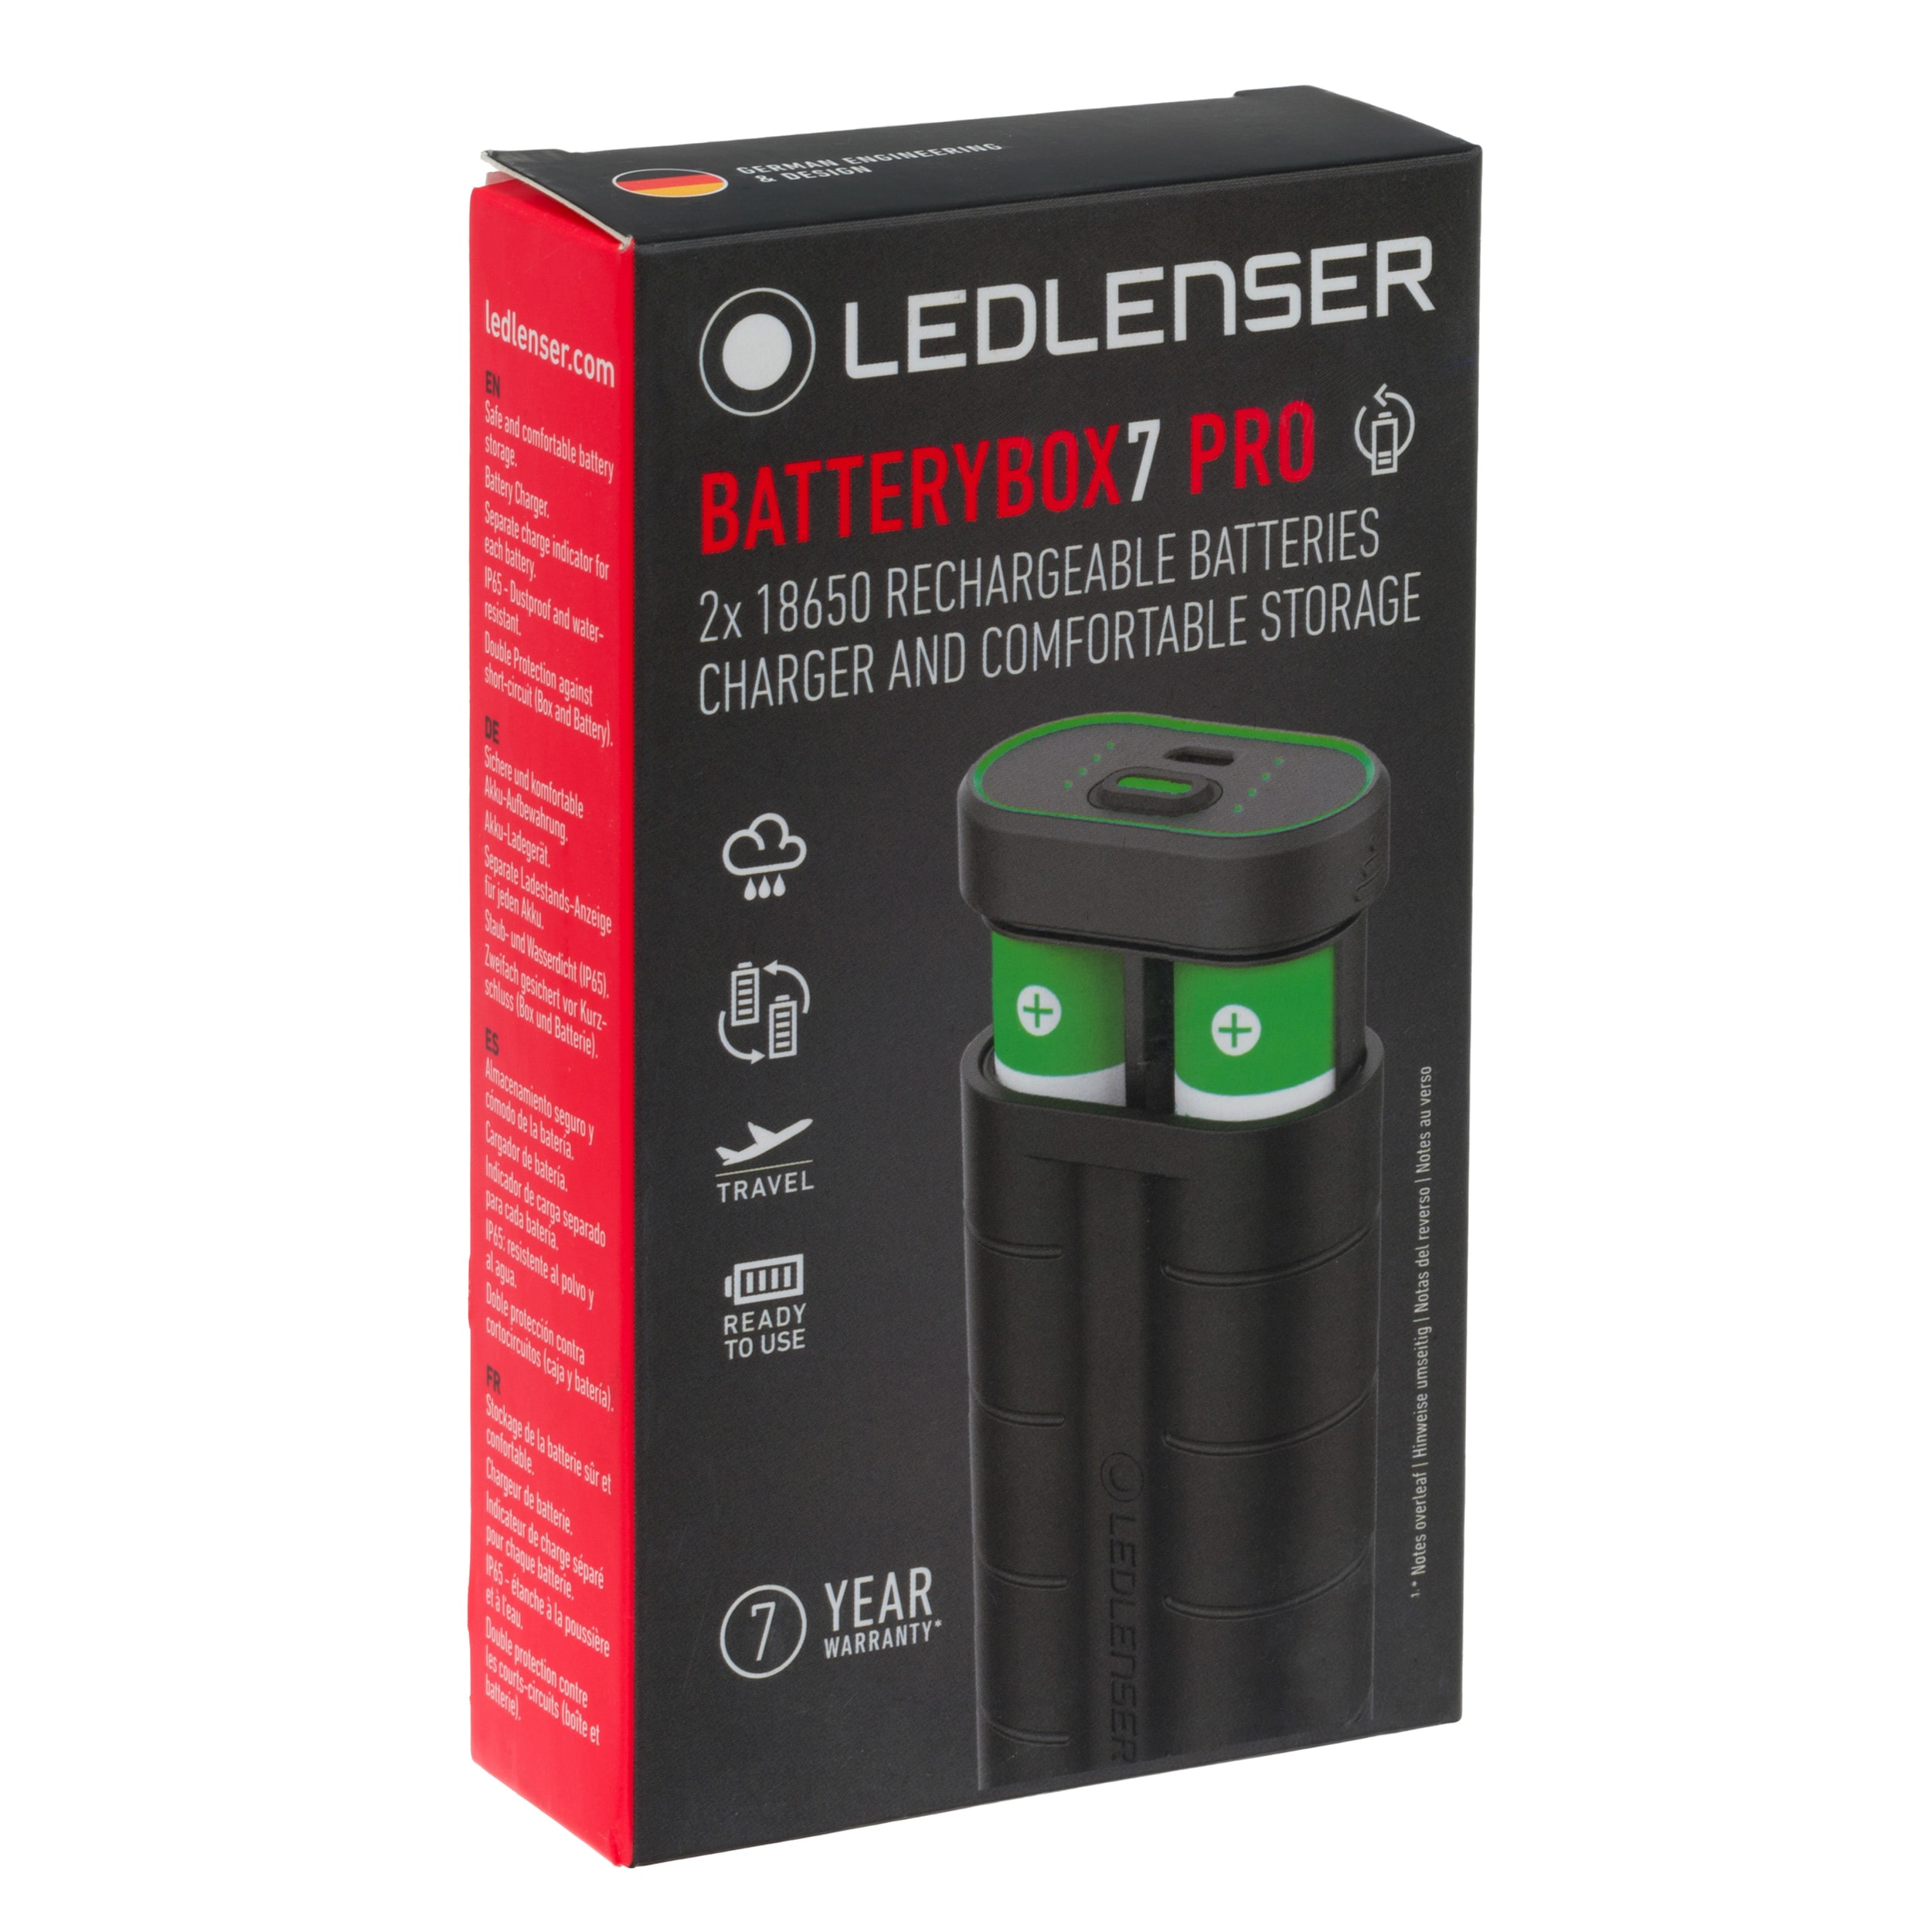 Pojemnik na baterie Ledlenser Batterybox7 Pro z funkcją ładowania